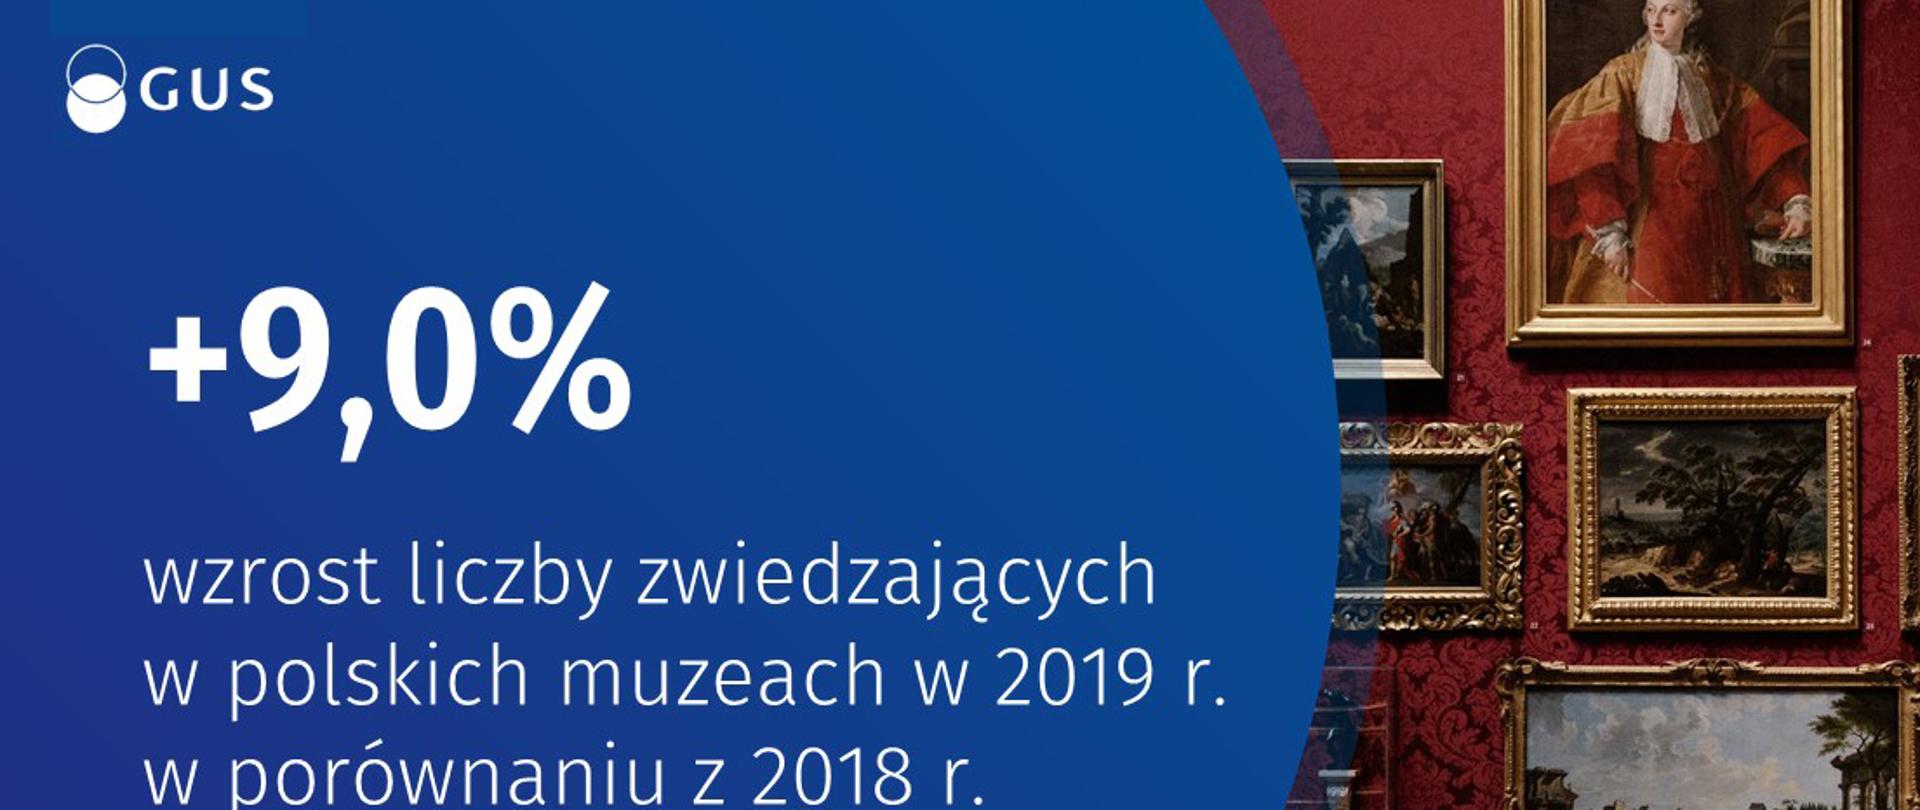 41,6 mln osób odwiedziło w 2019 r. polskie muzea. To wzrost liczby zwiedzających o 9% w porównaniu z 2018 r. 